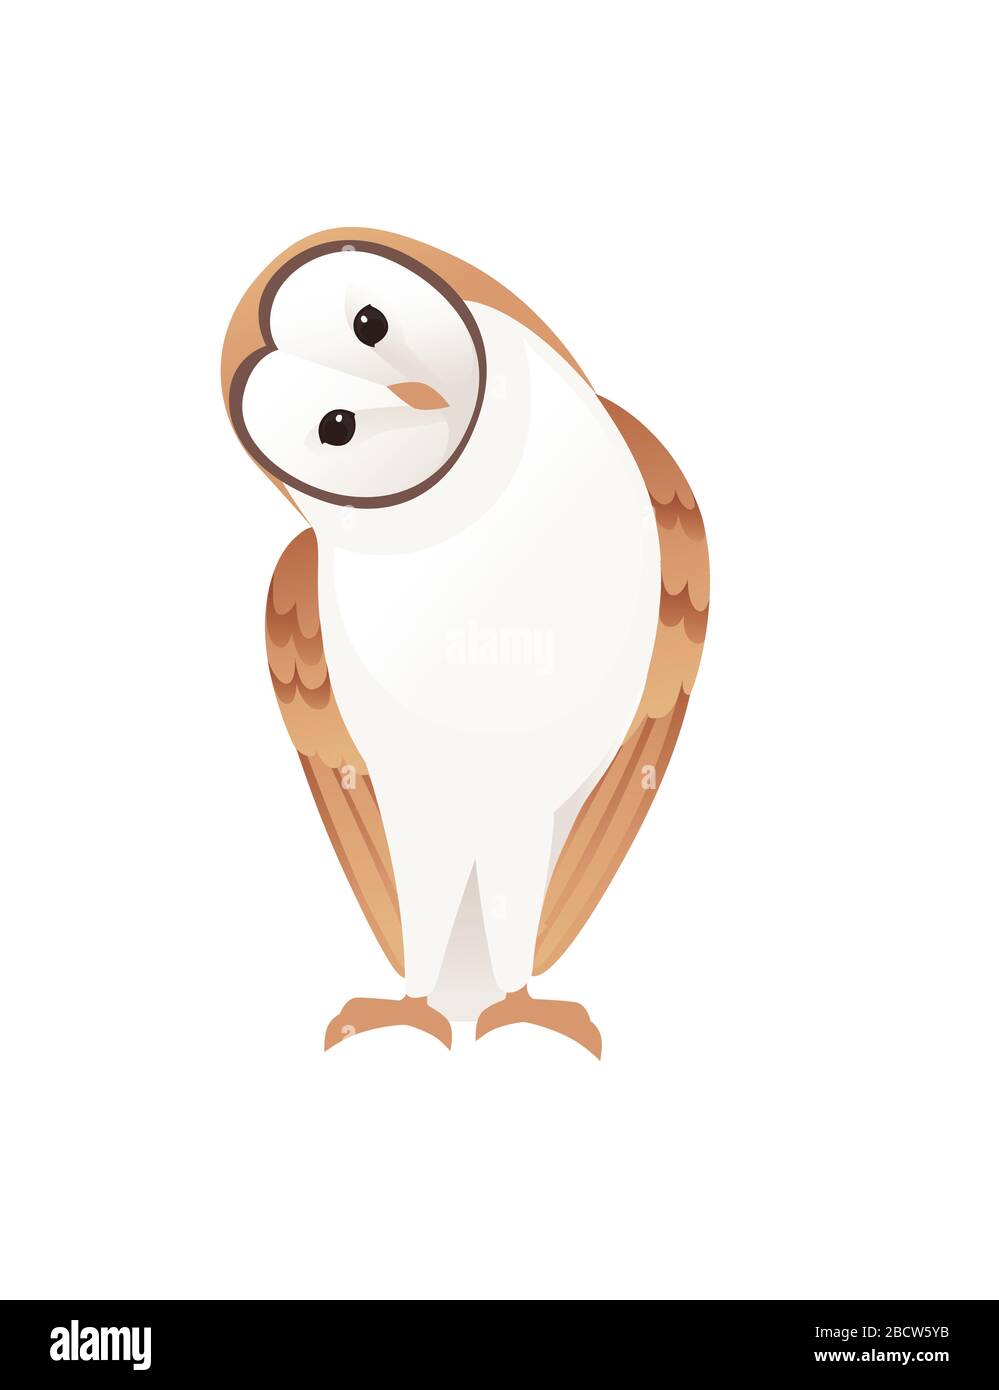 Niedliche Scheuneneule (Tyto alba) mit weißem Gesicht und braunen Flügeln Cartoon Wildwald Vogel Tier Design flache Vektorgrafiken isoliert auf weißem Hintergrund Stock Vektor